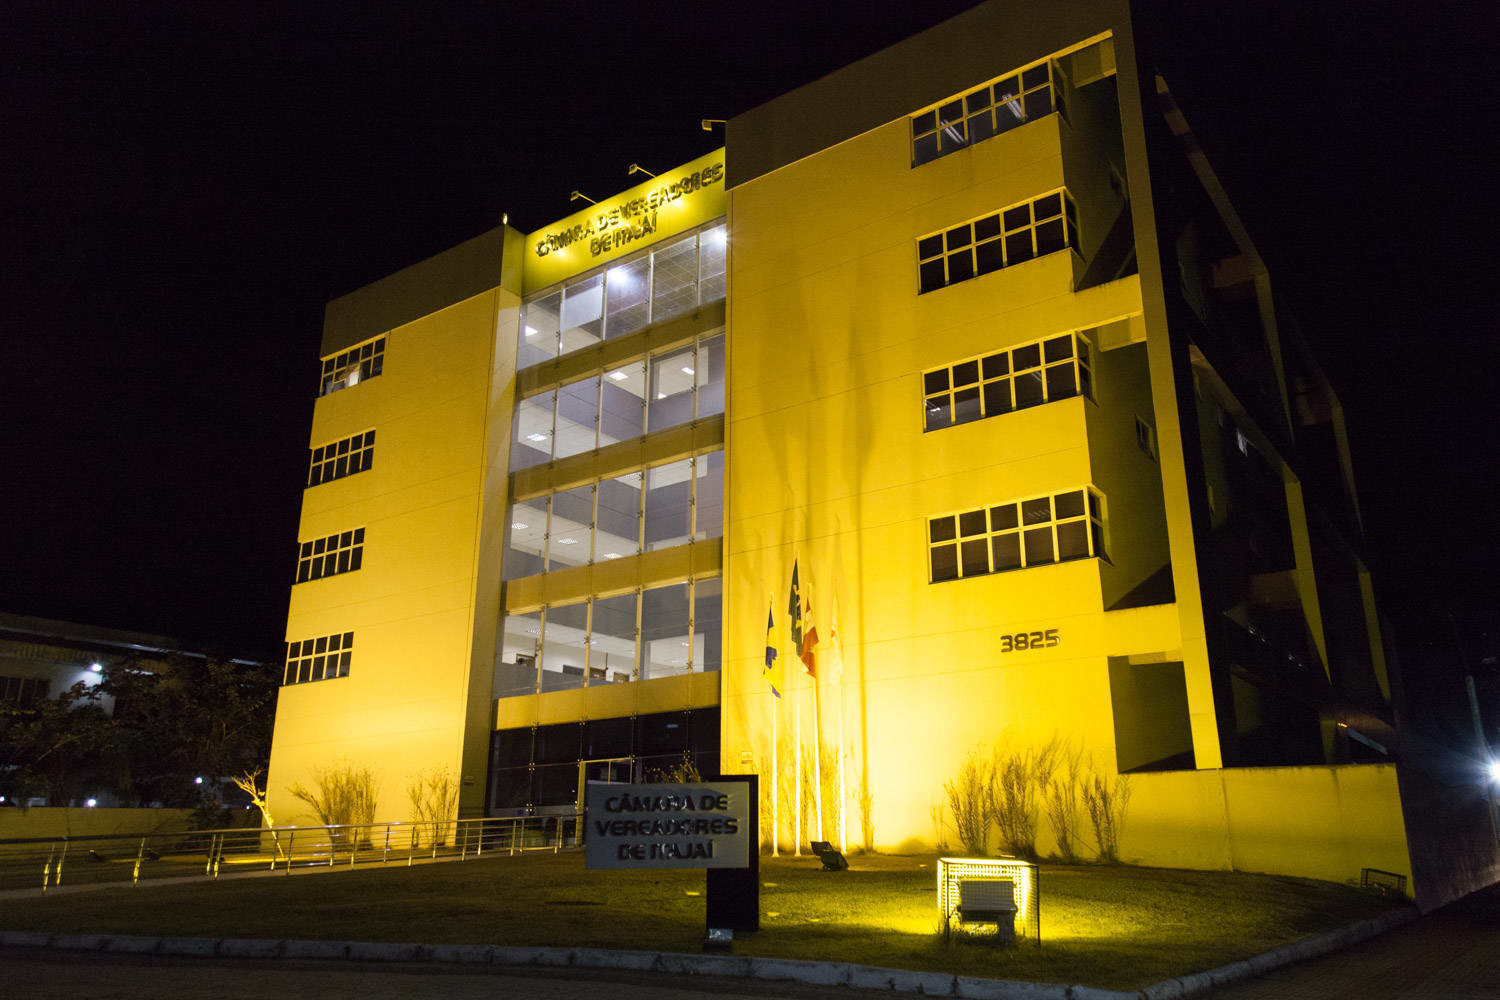 Câmara muda iluminação da fachada em apoio ao Maio Amarelo